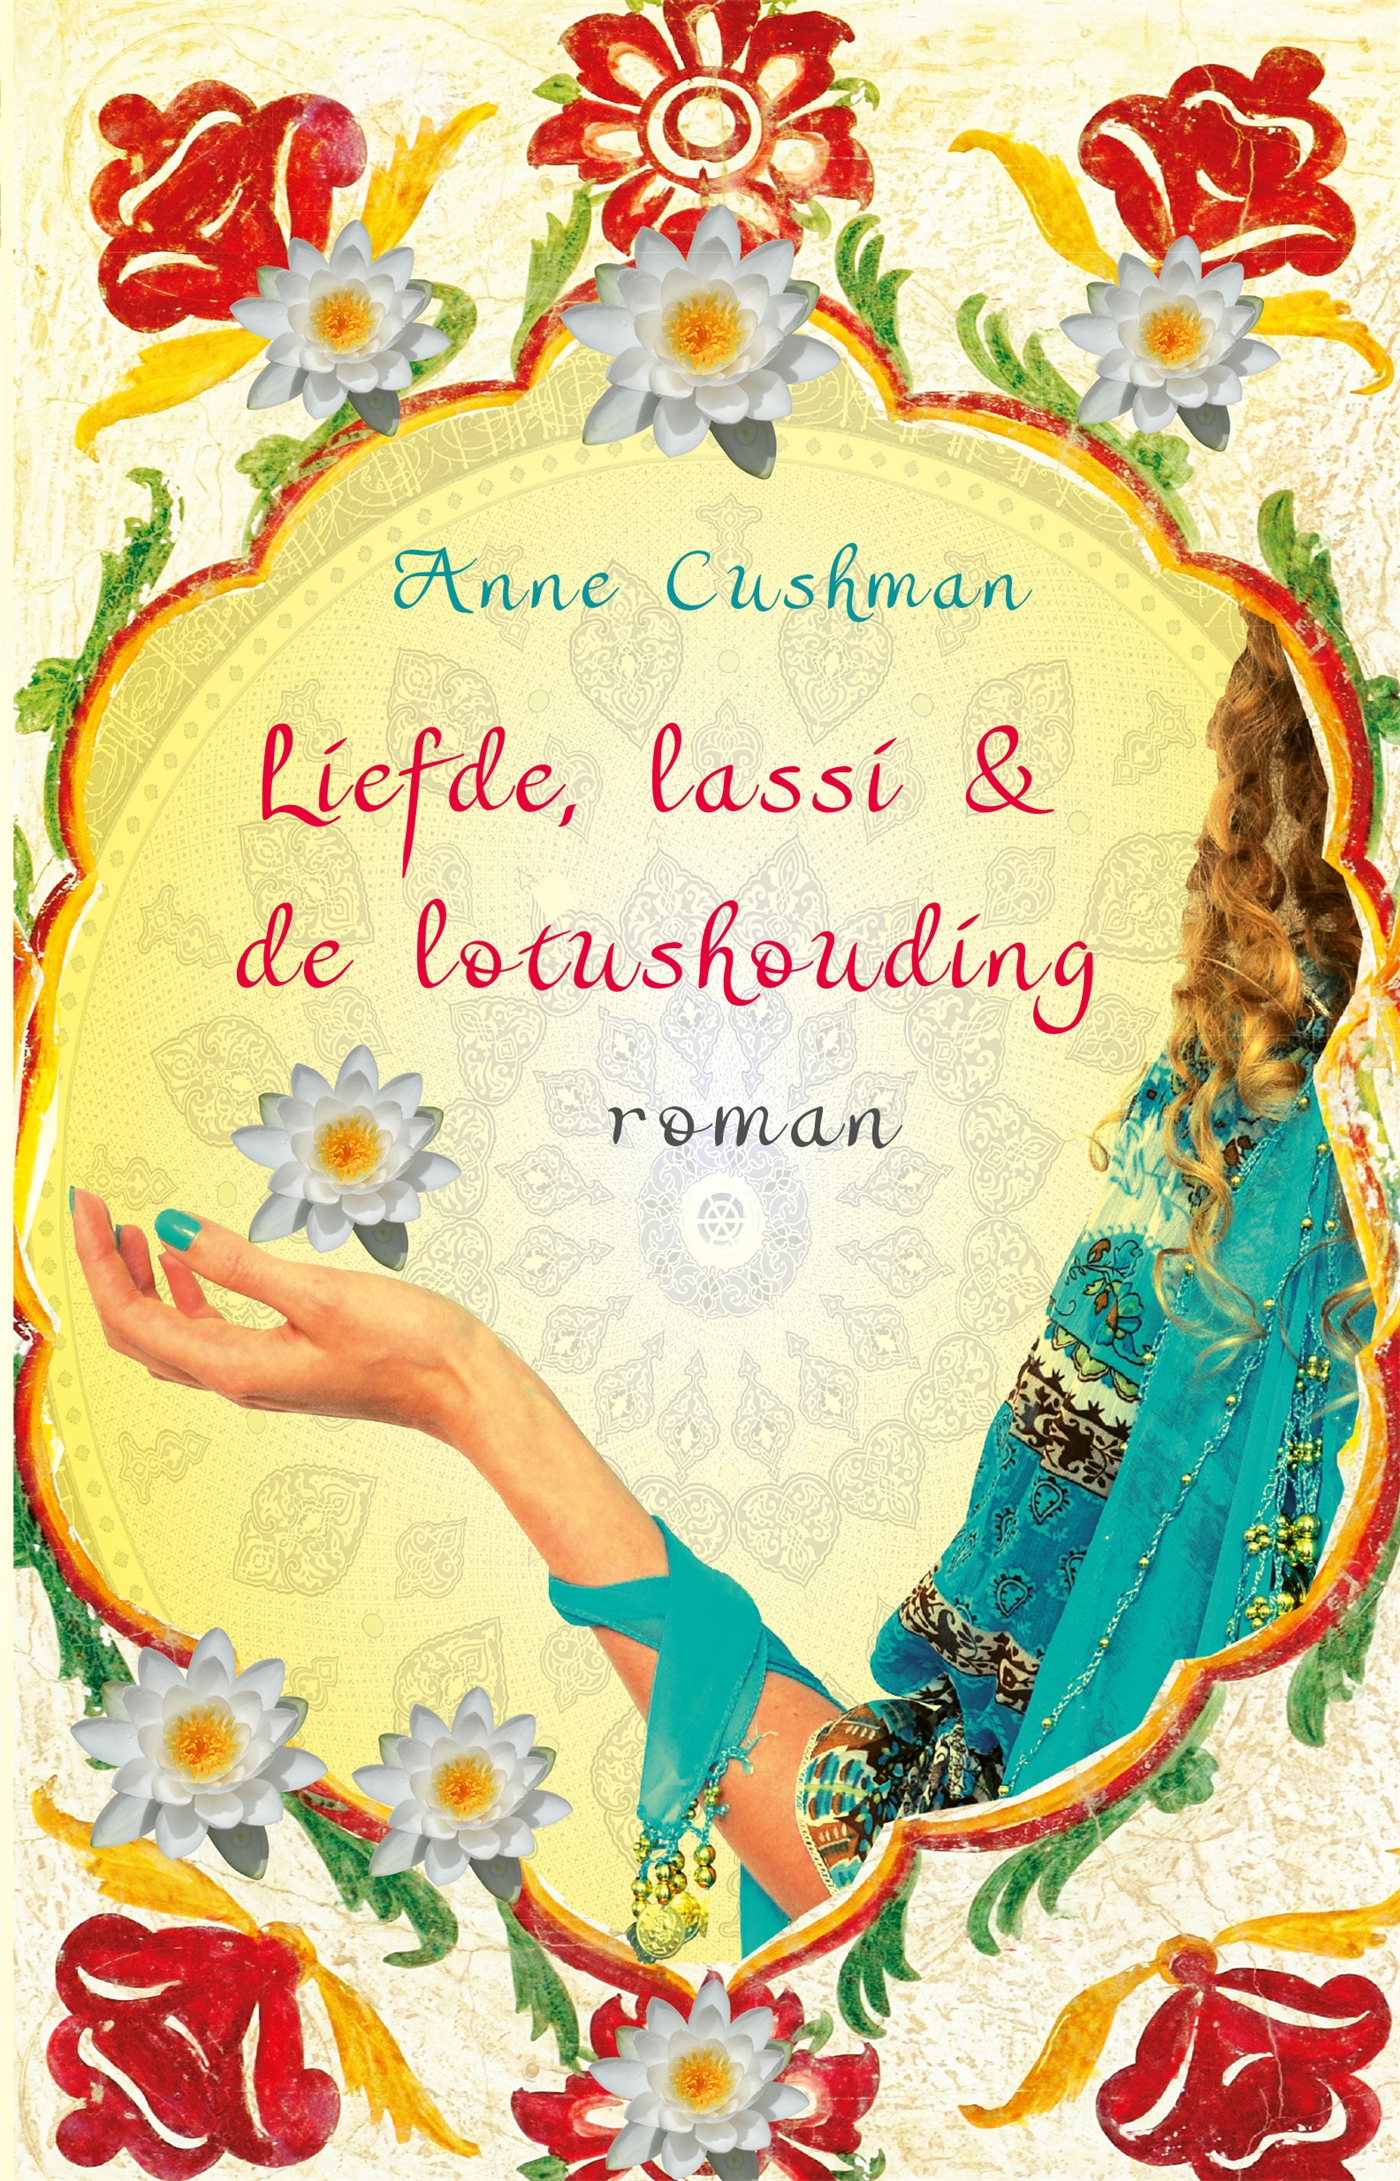 Liefde, lassi & de lotushouding (Ebook)